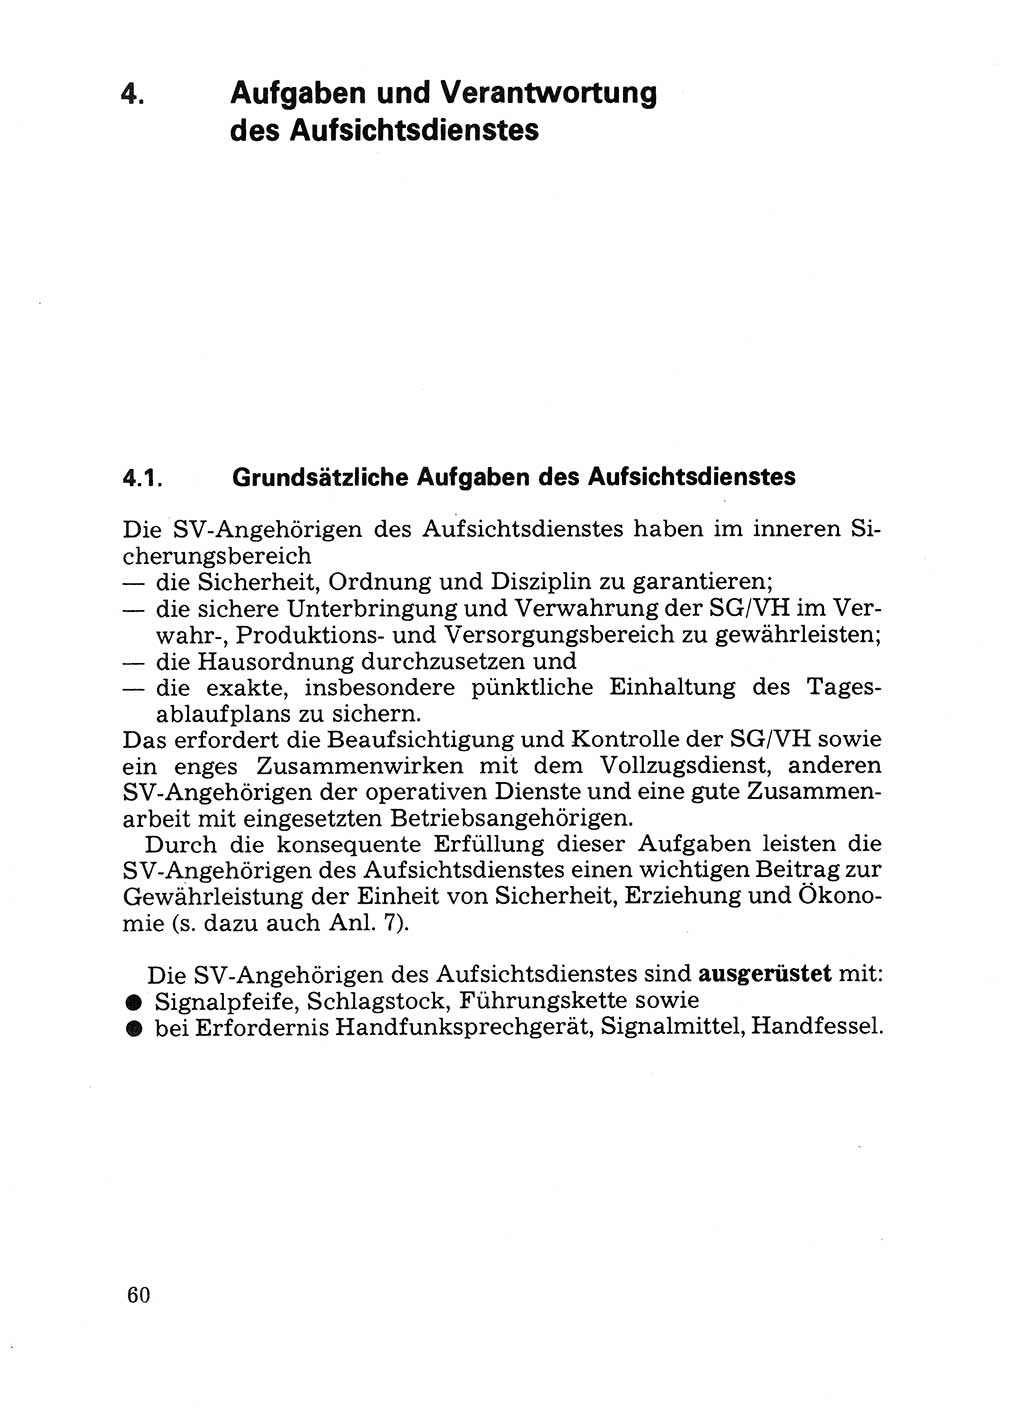 Handbuch für operative Dienste, Abteilung Strafvollzug (SV) [Ministerium des Innern (MdI) Deutsche Demokratische Republik (DDR)] 1981, Seite 60 (Hb. op. D. Abt. SV MdI DDR 1981, S. 60)